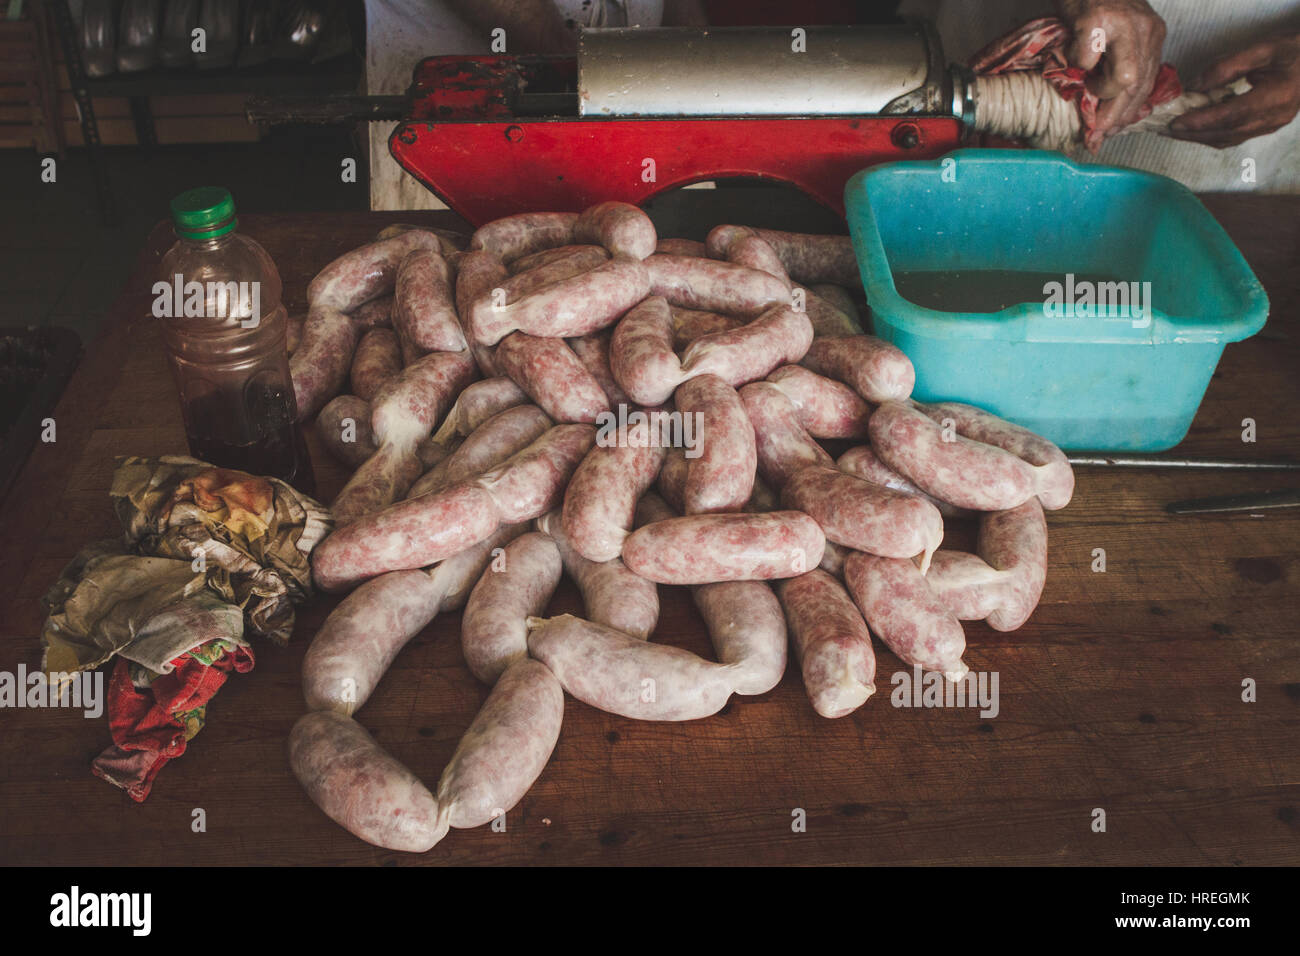 Dans un abattoir de fabrication de saucisses à Alba, qui est situé dans la province du Piémont, en Italie. Banque D'Images